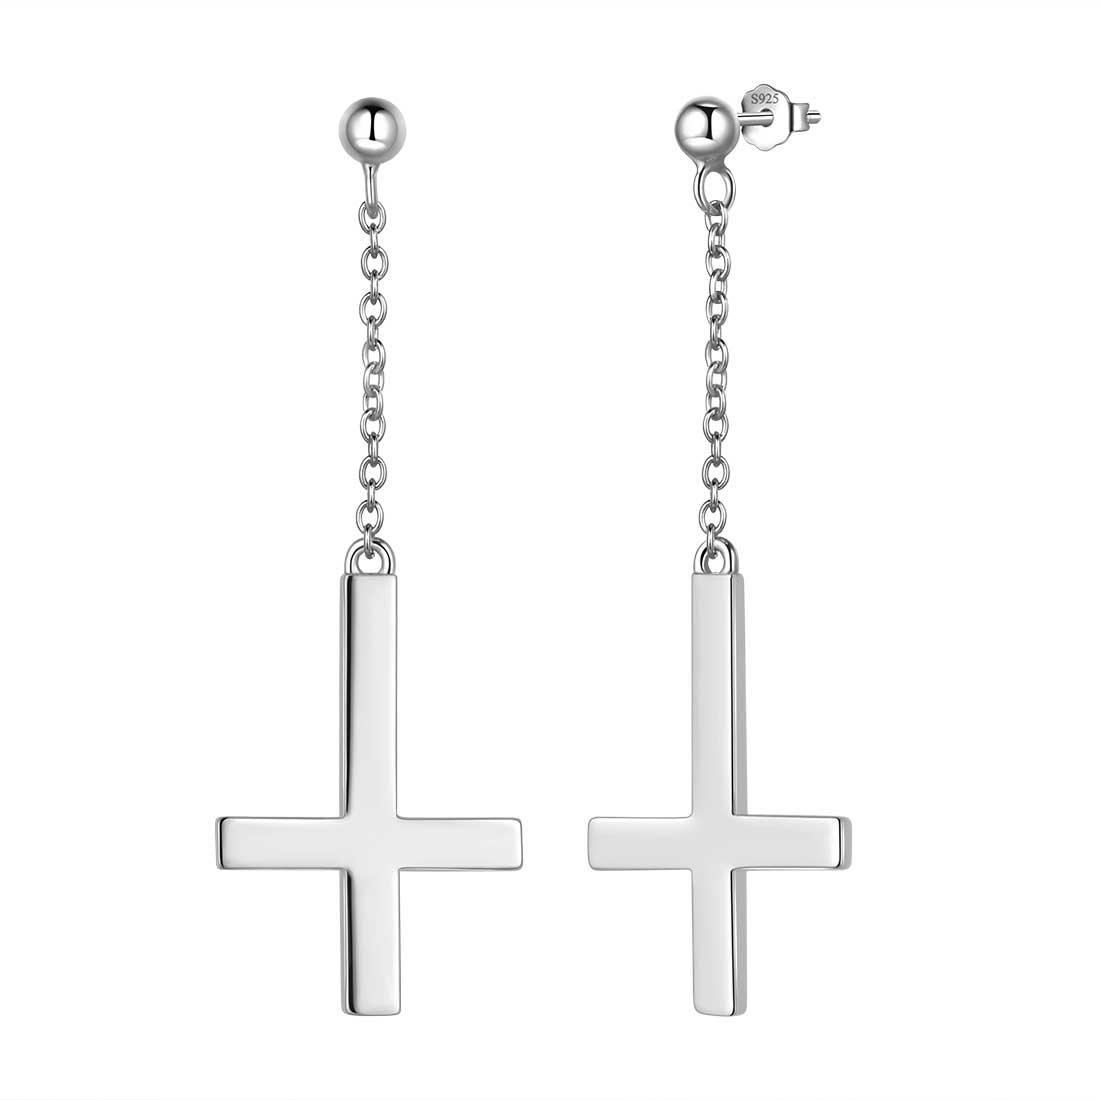 Upside Down Cross Dangle Earrings Sterling Silver - Earrings - Aurora Tears Jewelry